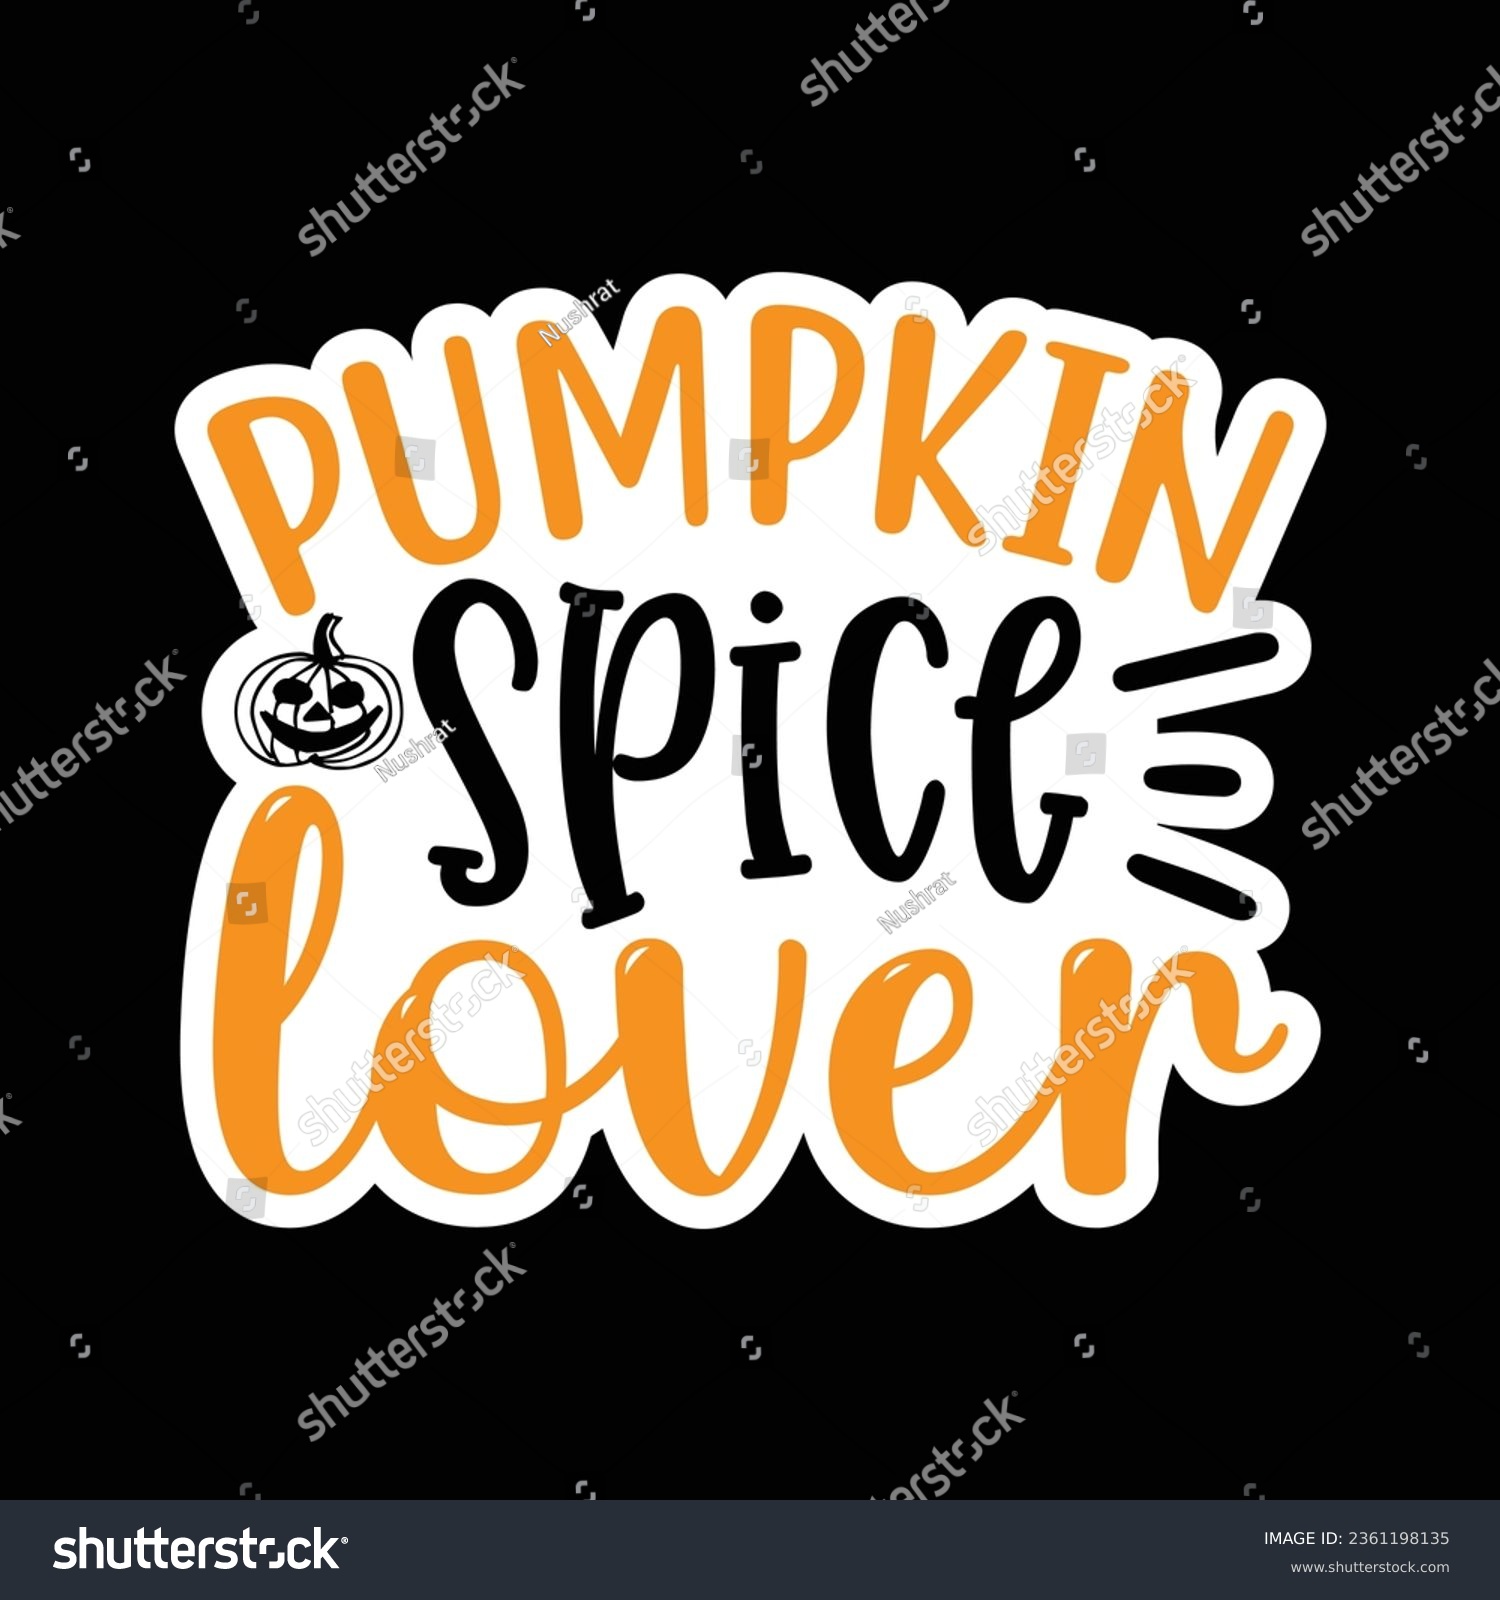 SVG of Pumpkin Spice Lover, Sticker SVG Design Vector file. svg